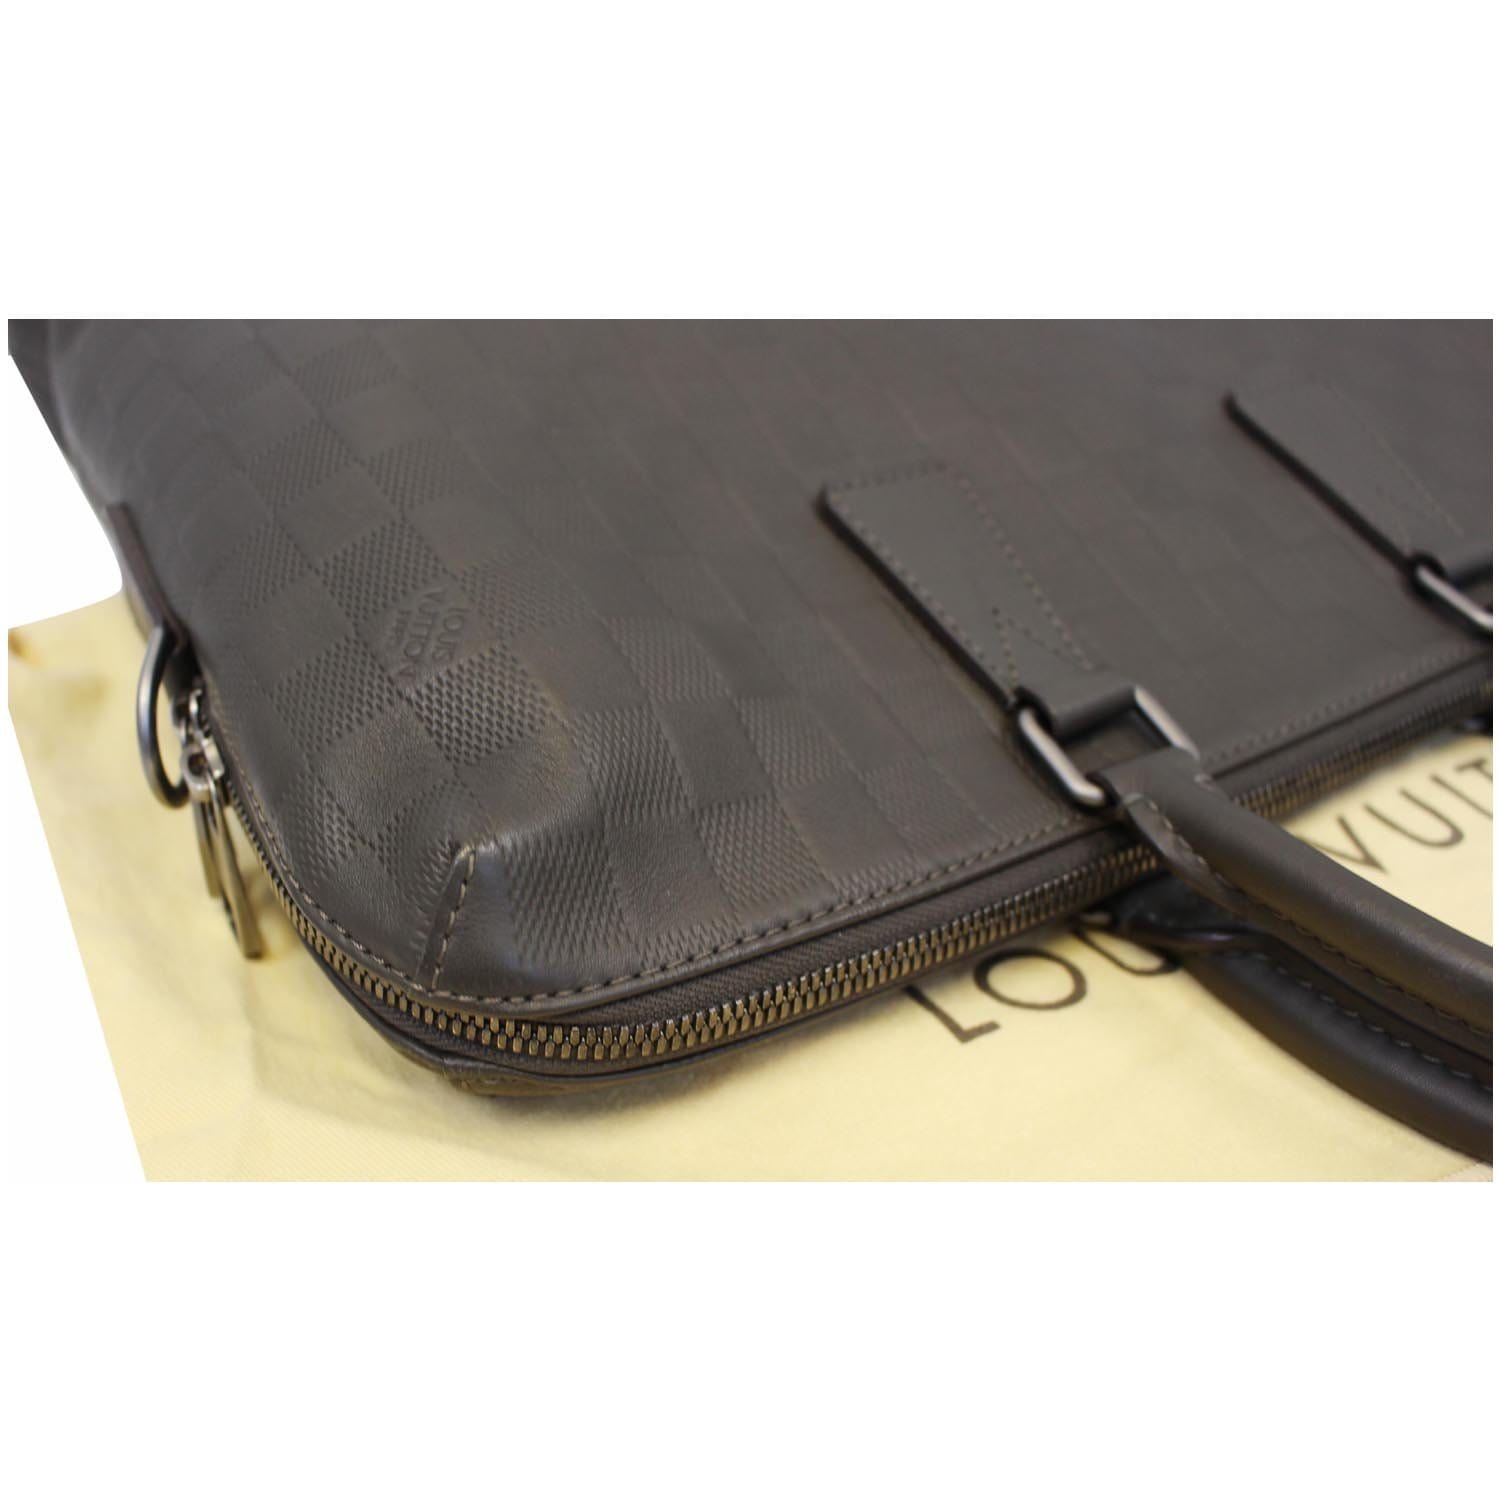 Louis Vuitton black epi leather Porte-Documents Jour Briefcase at